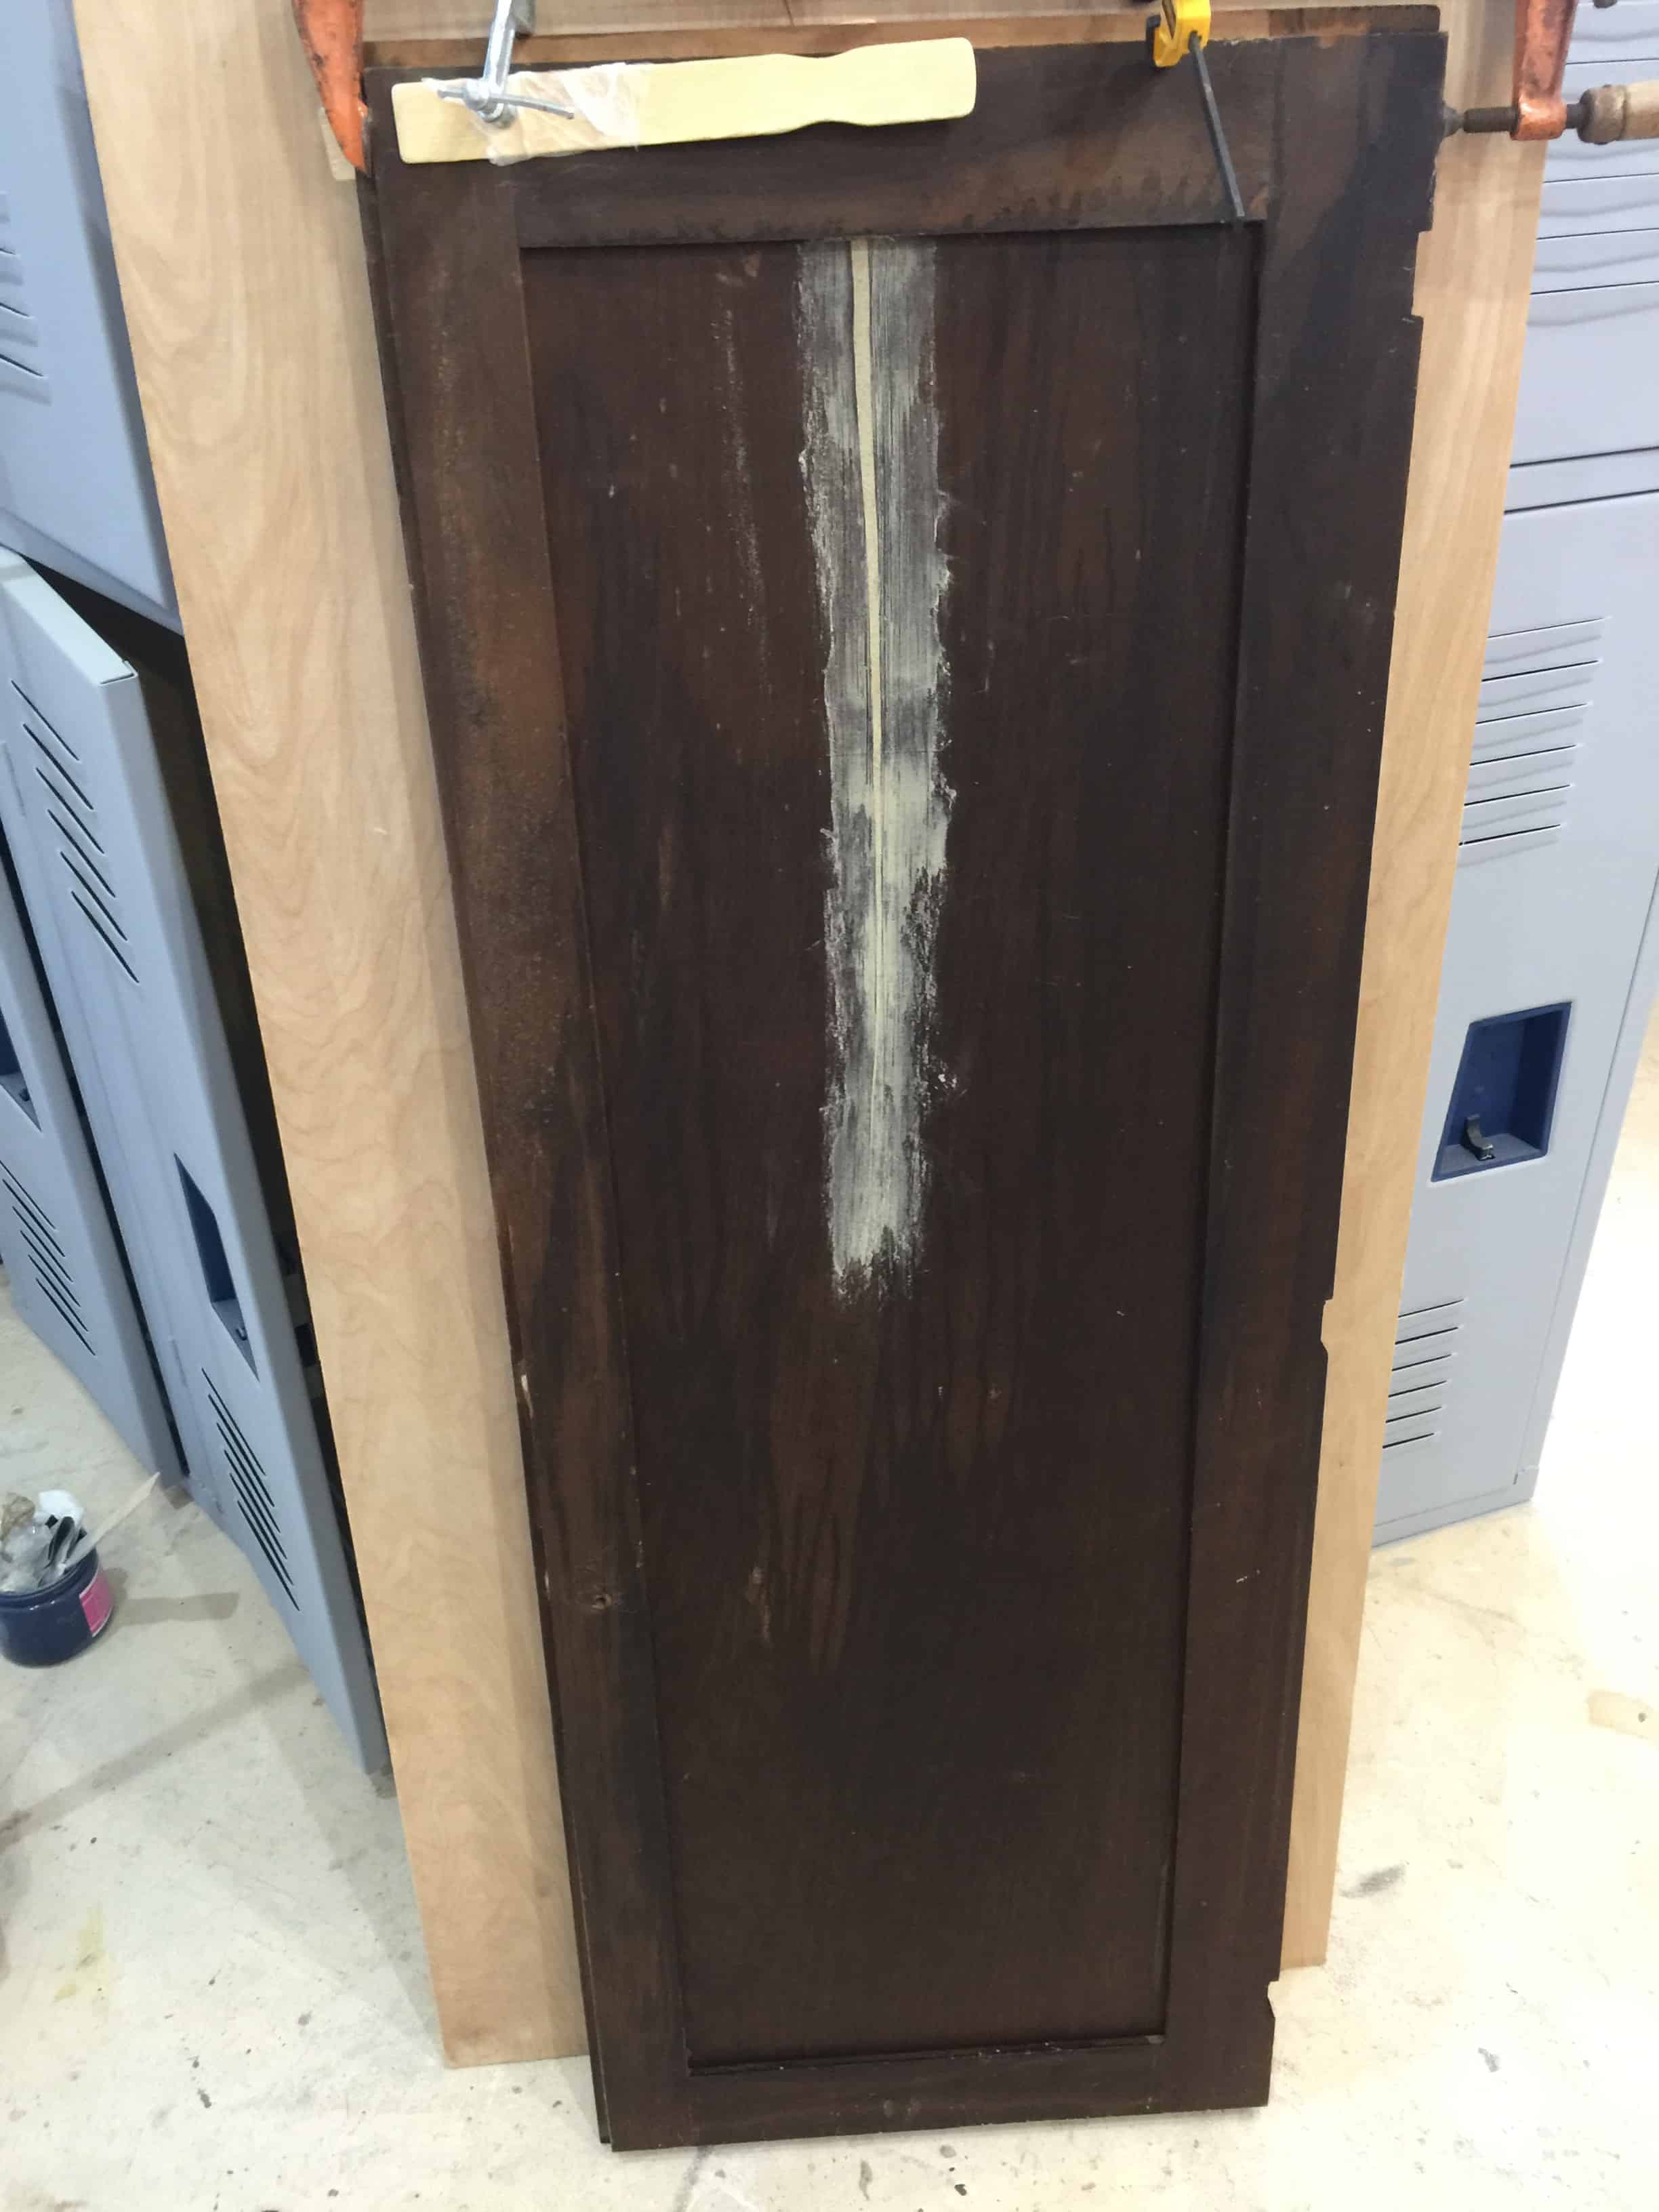 Saved by Scottie Overlays FFFC door repair wood filler